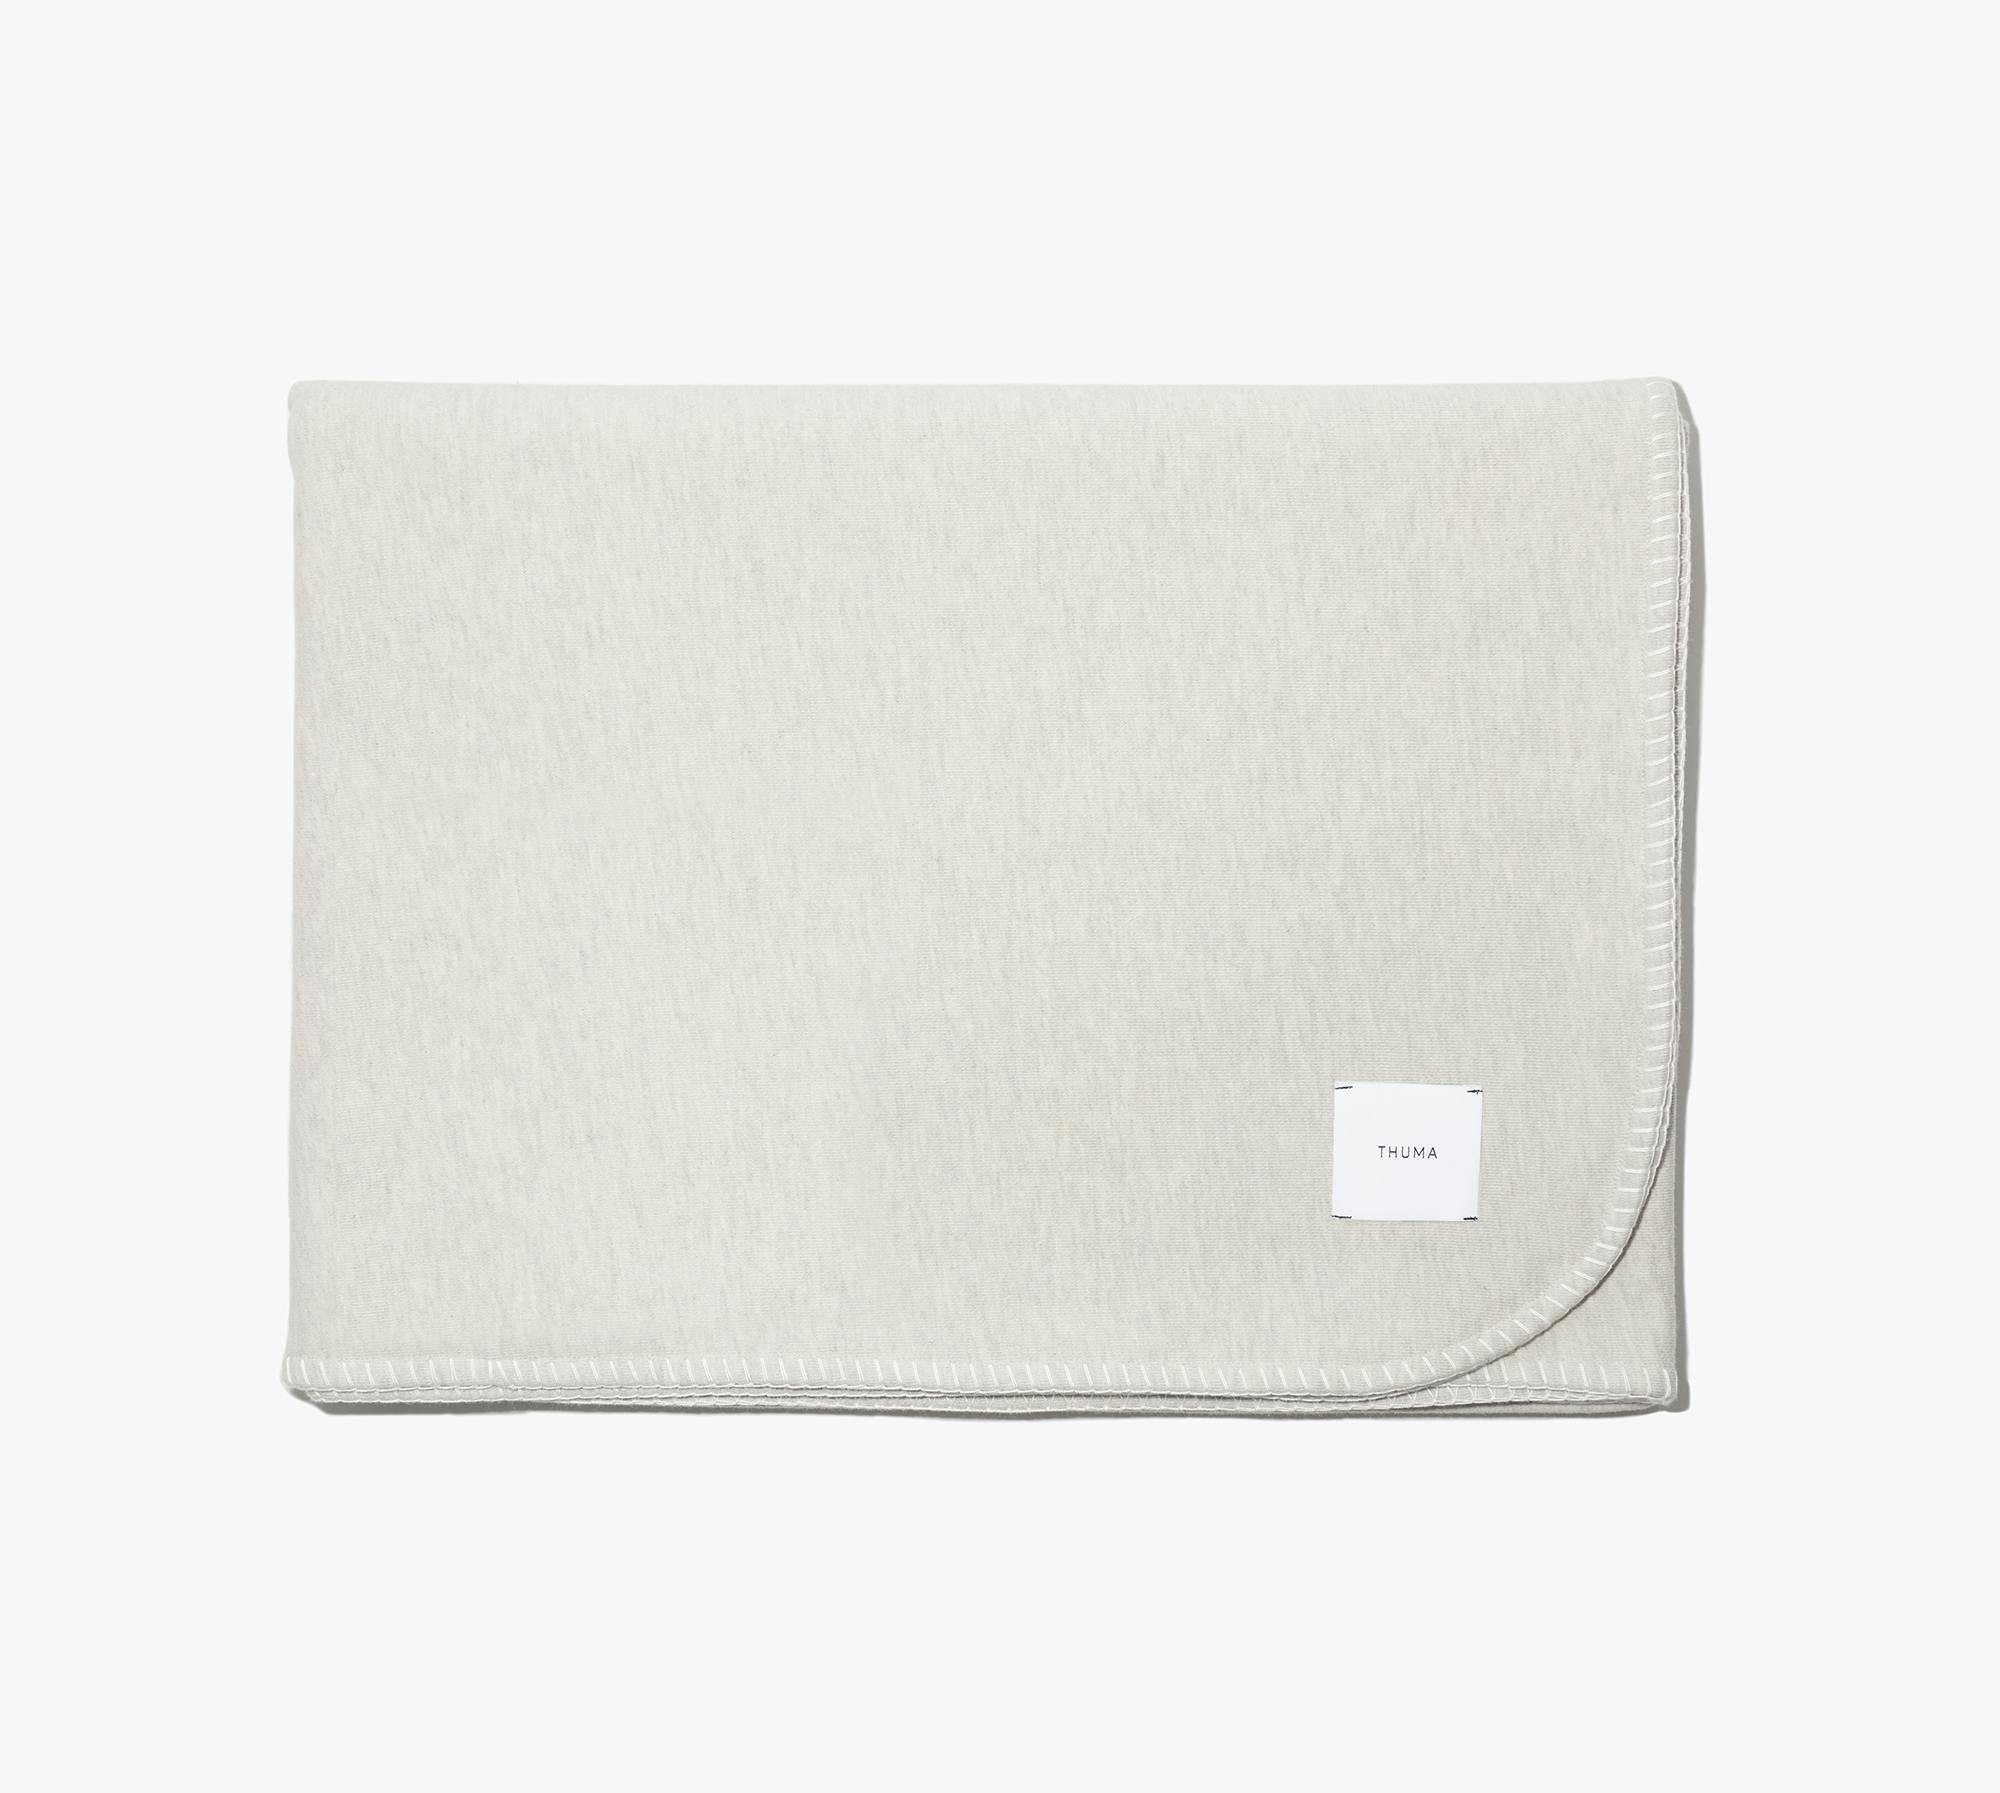 Favorite Hoodie Blanket (Oatmeal) - Product Image 